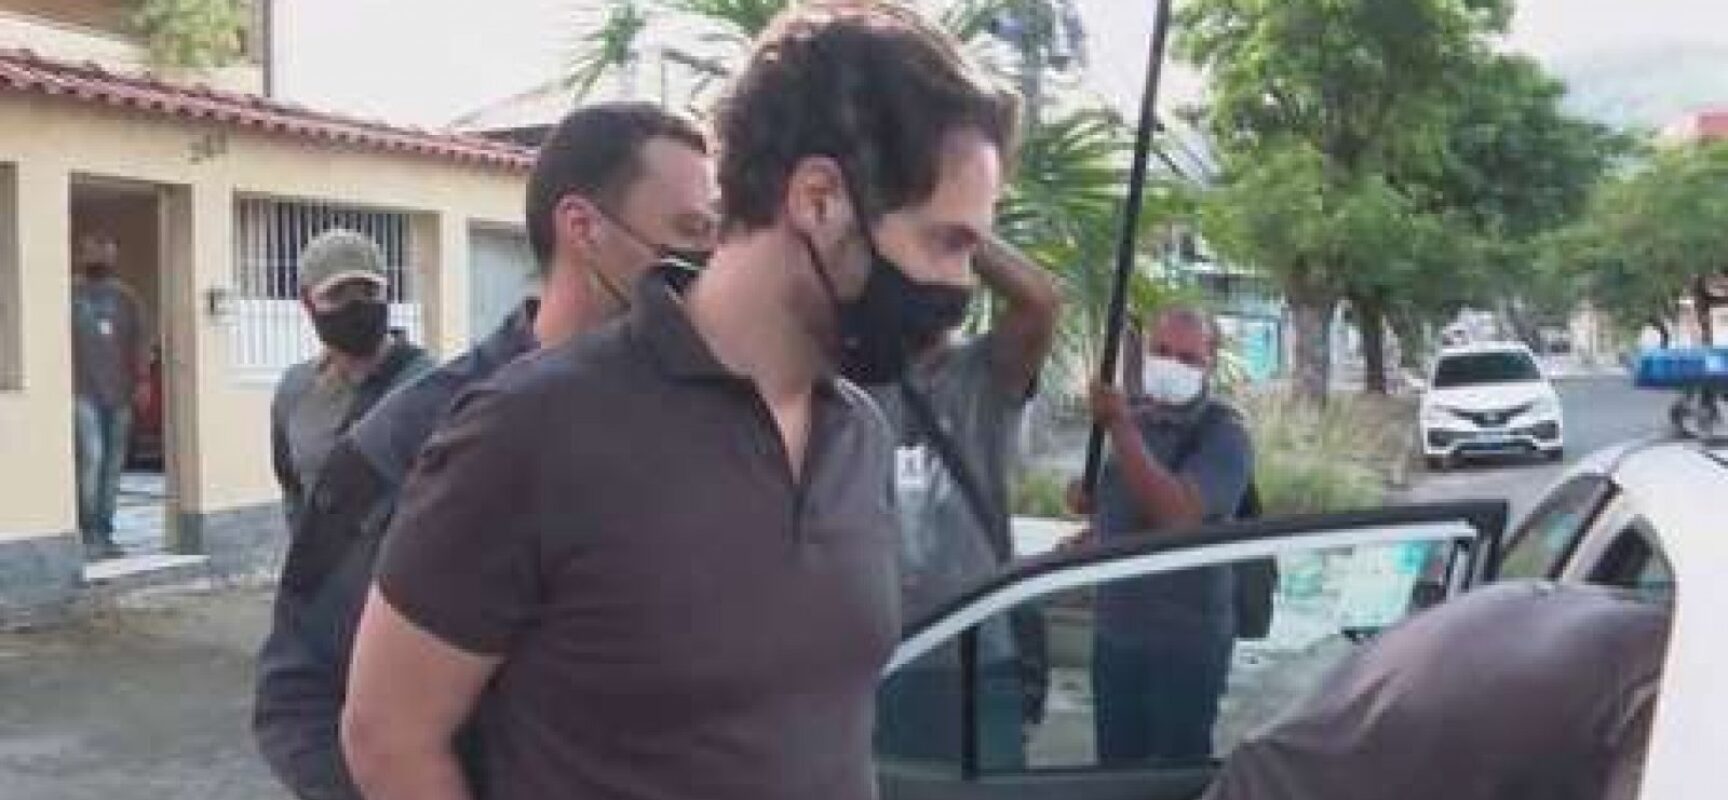 Justiça nega pedido de afastamento de Dr. Jairinho da Câmara Municipal do Rio